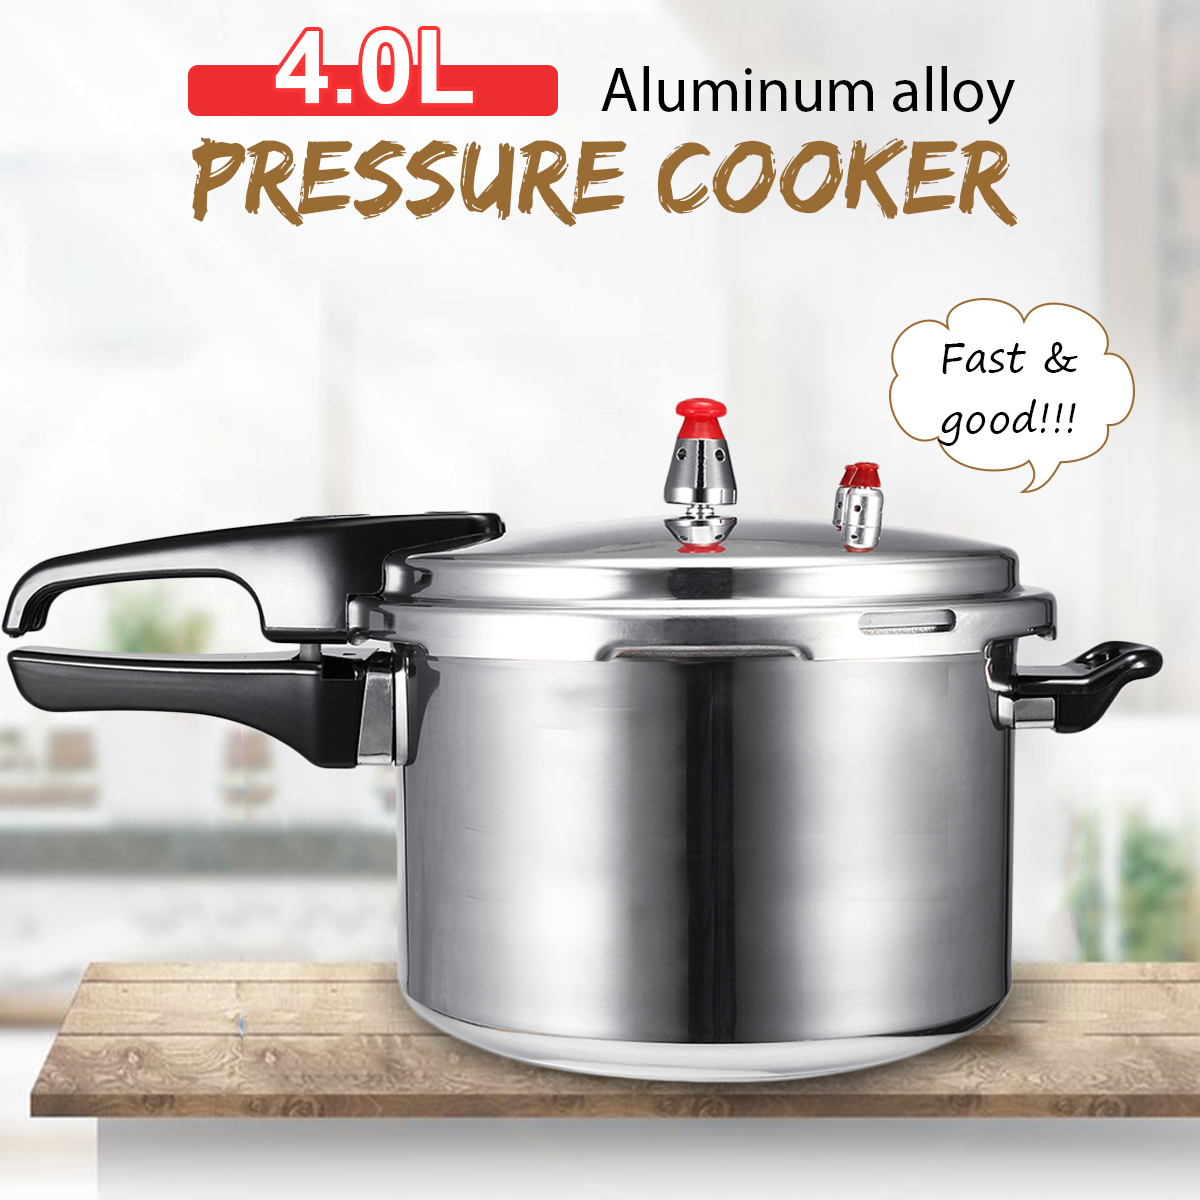 4L5L-Pressure-Cooker-Commercial-Aluminum-Alloy-Pressure-Cooker-1720053-3